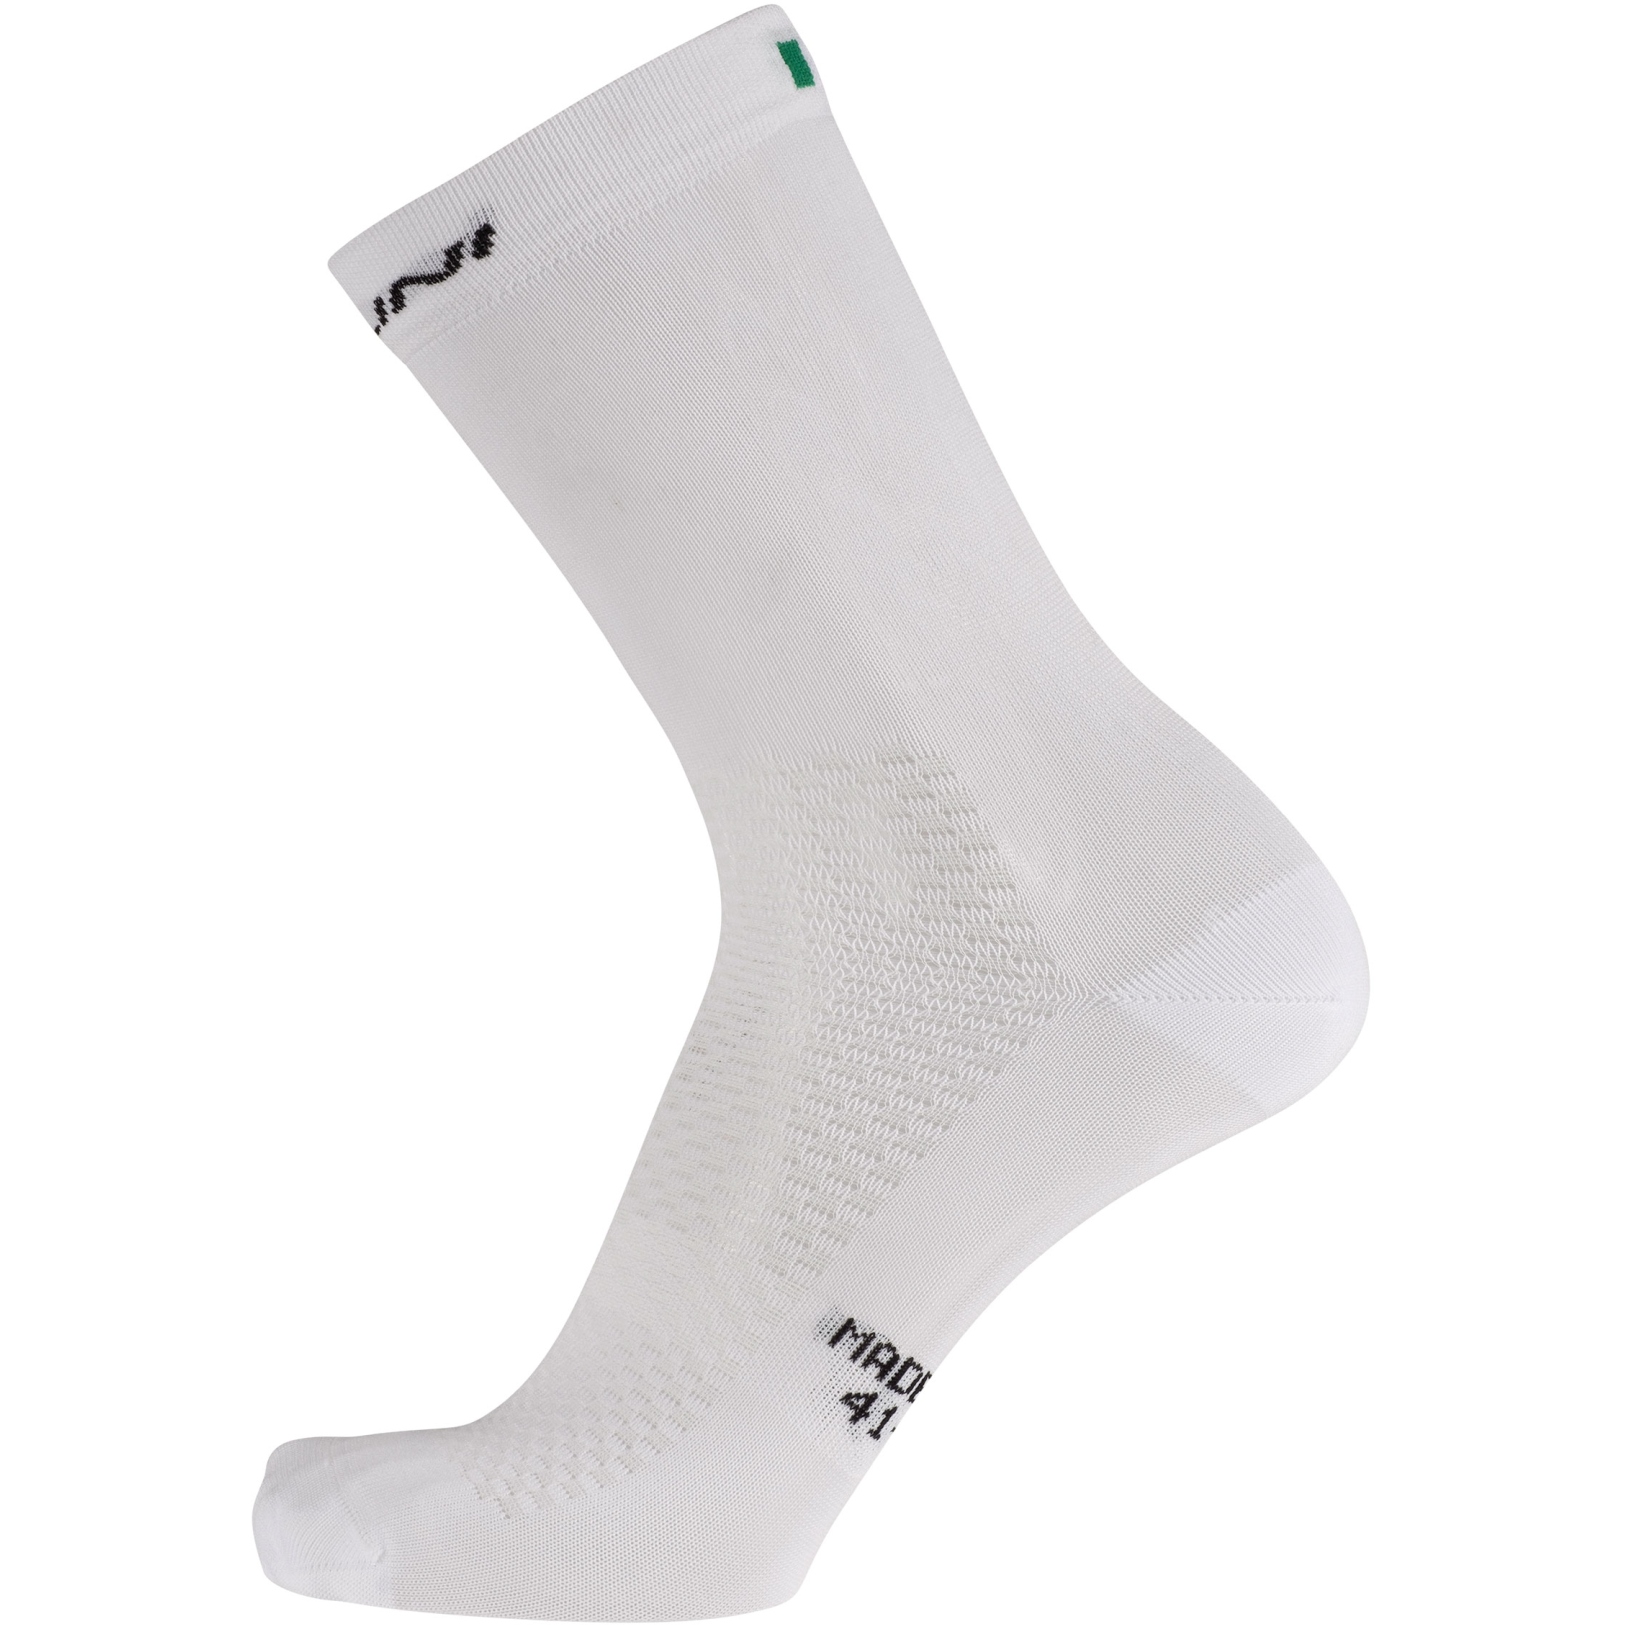 Produktbild von Nalini B0W Vela Socken - schwarz/weiß 4020